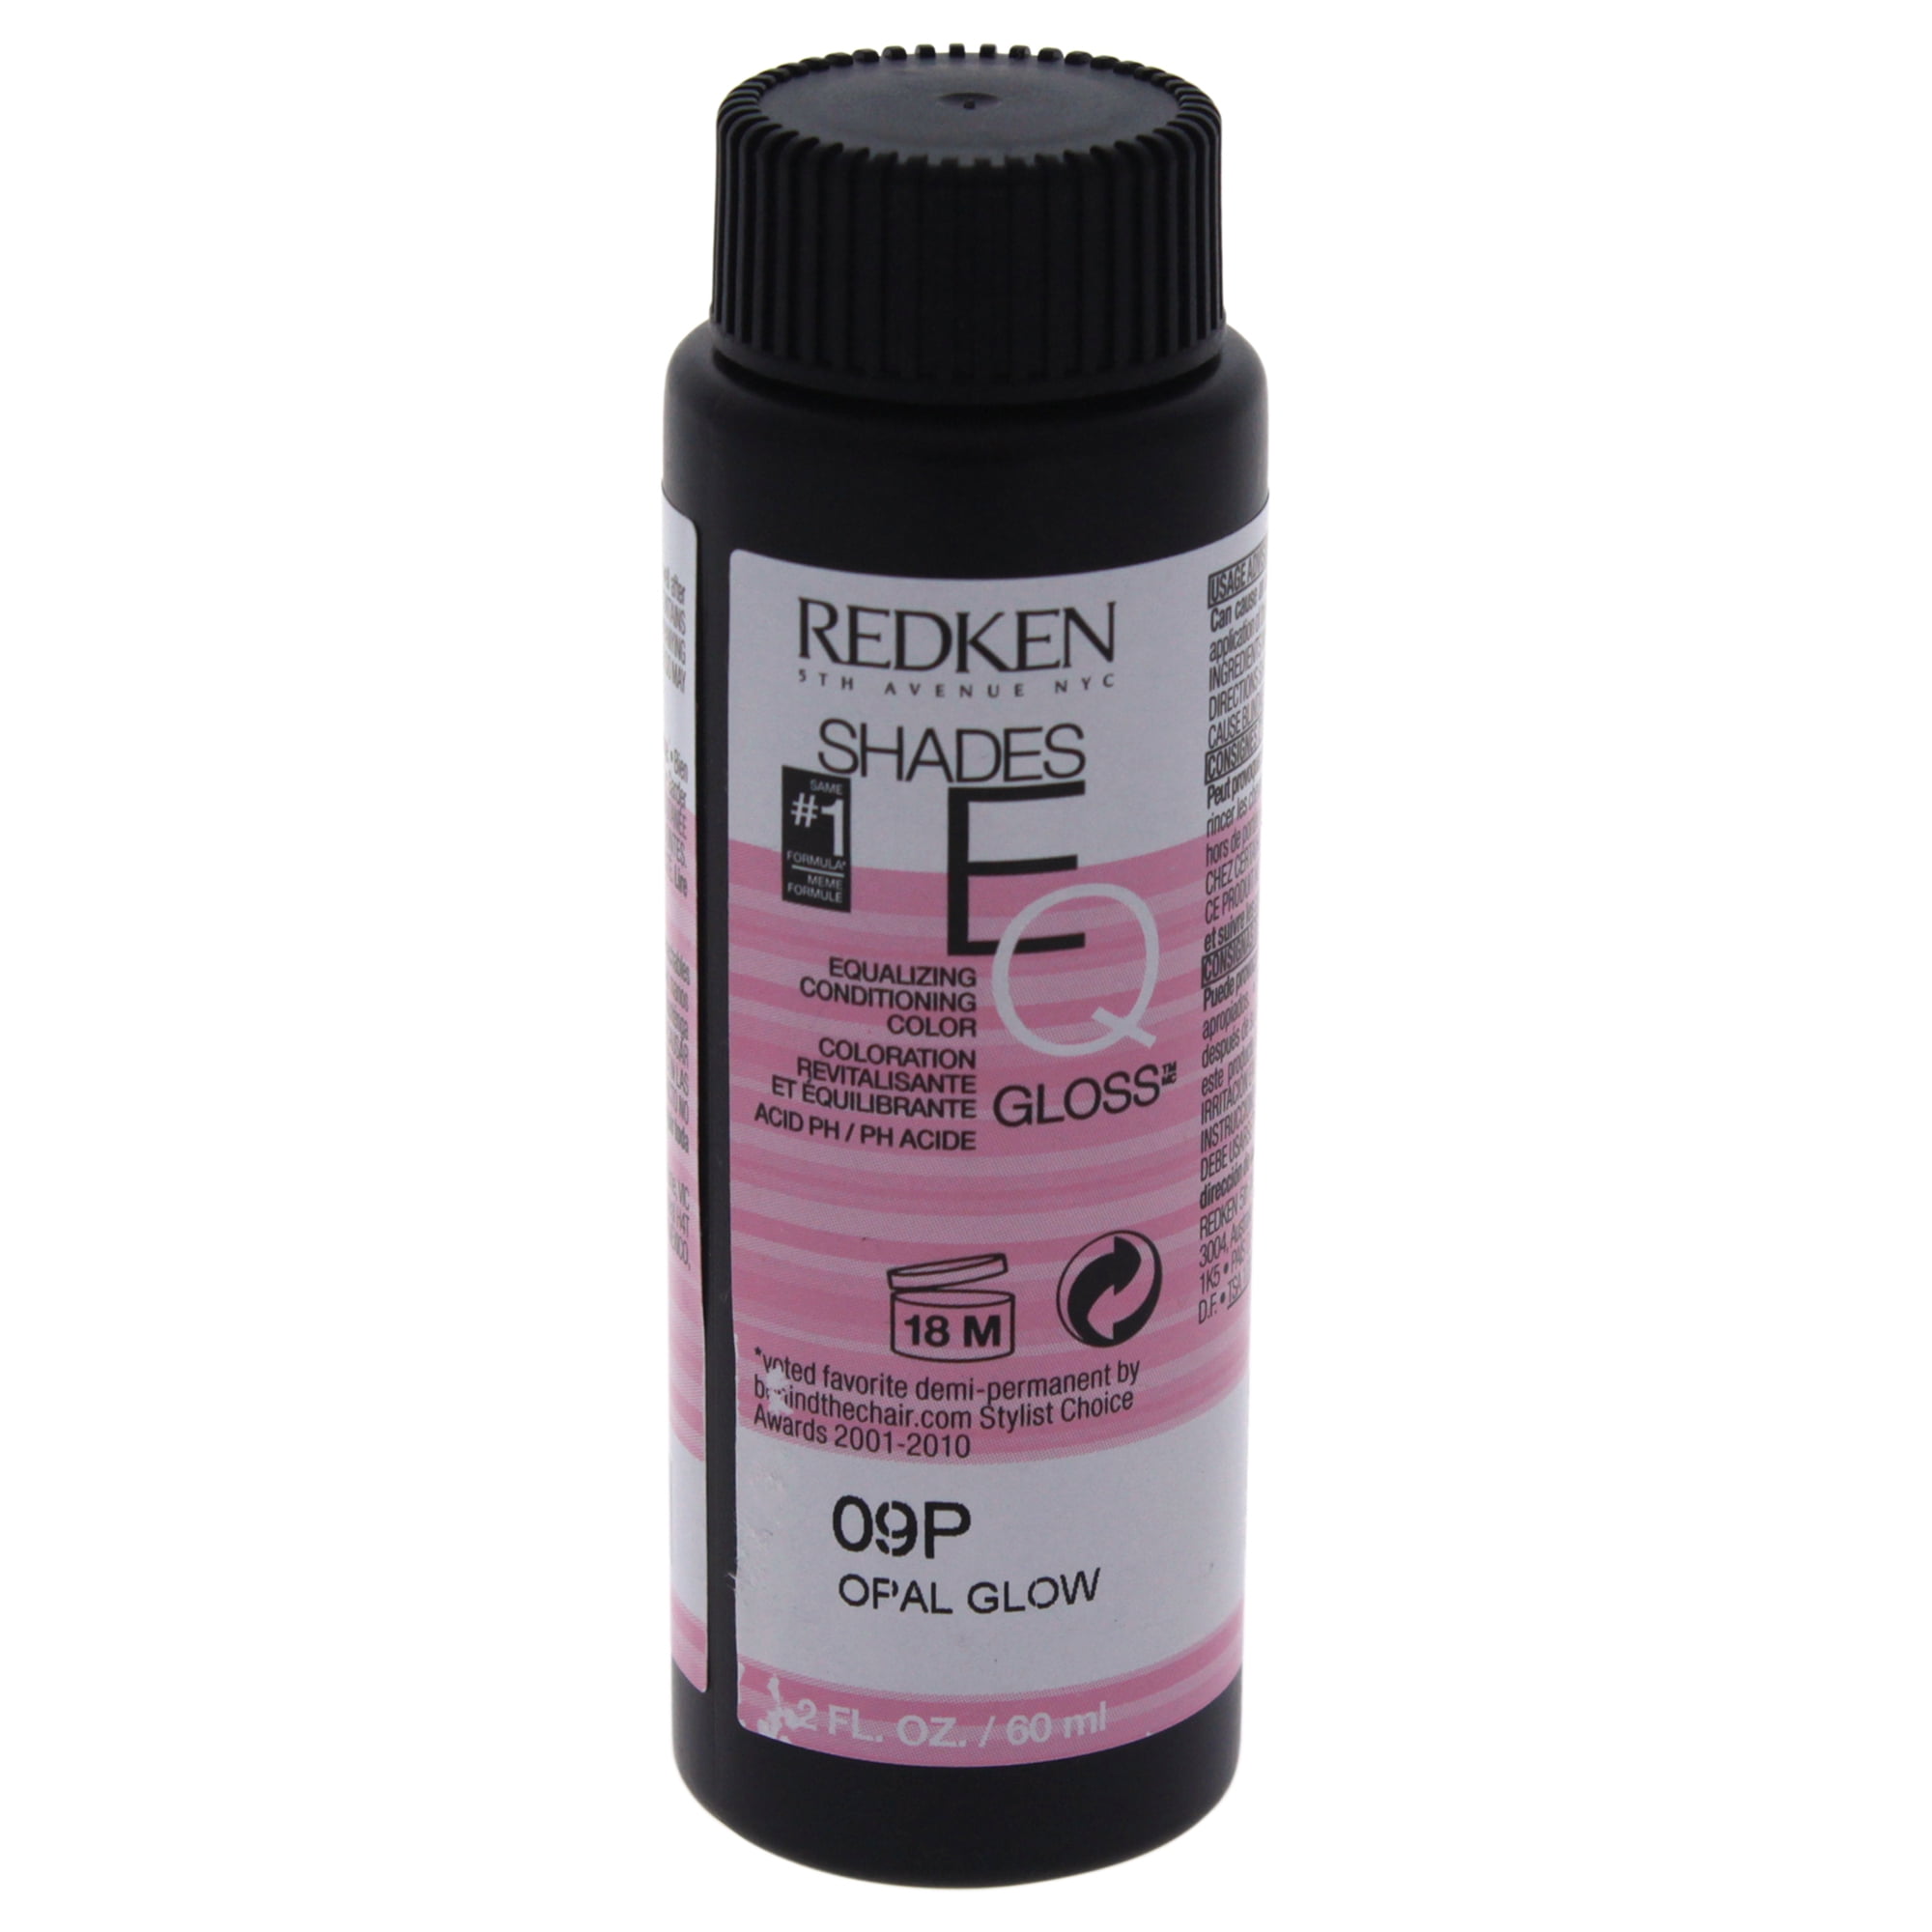 Redken Shades EQ Hair Color Gloss, 09P - Opal Glow, 2 fl ...